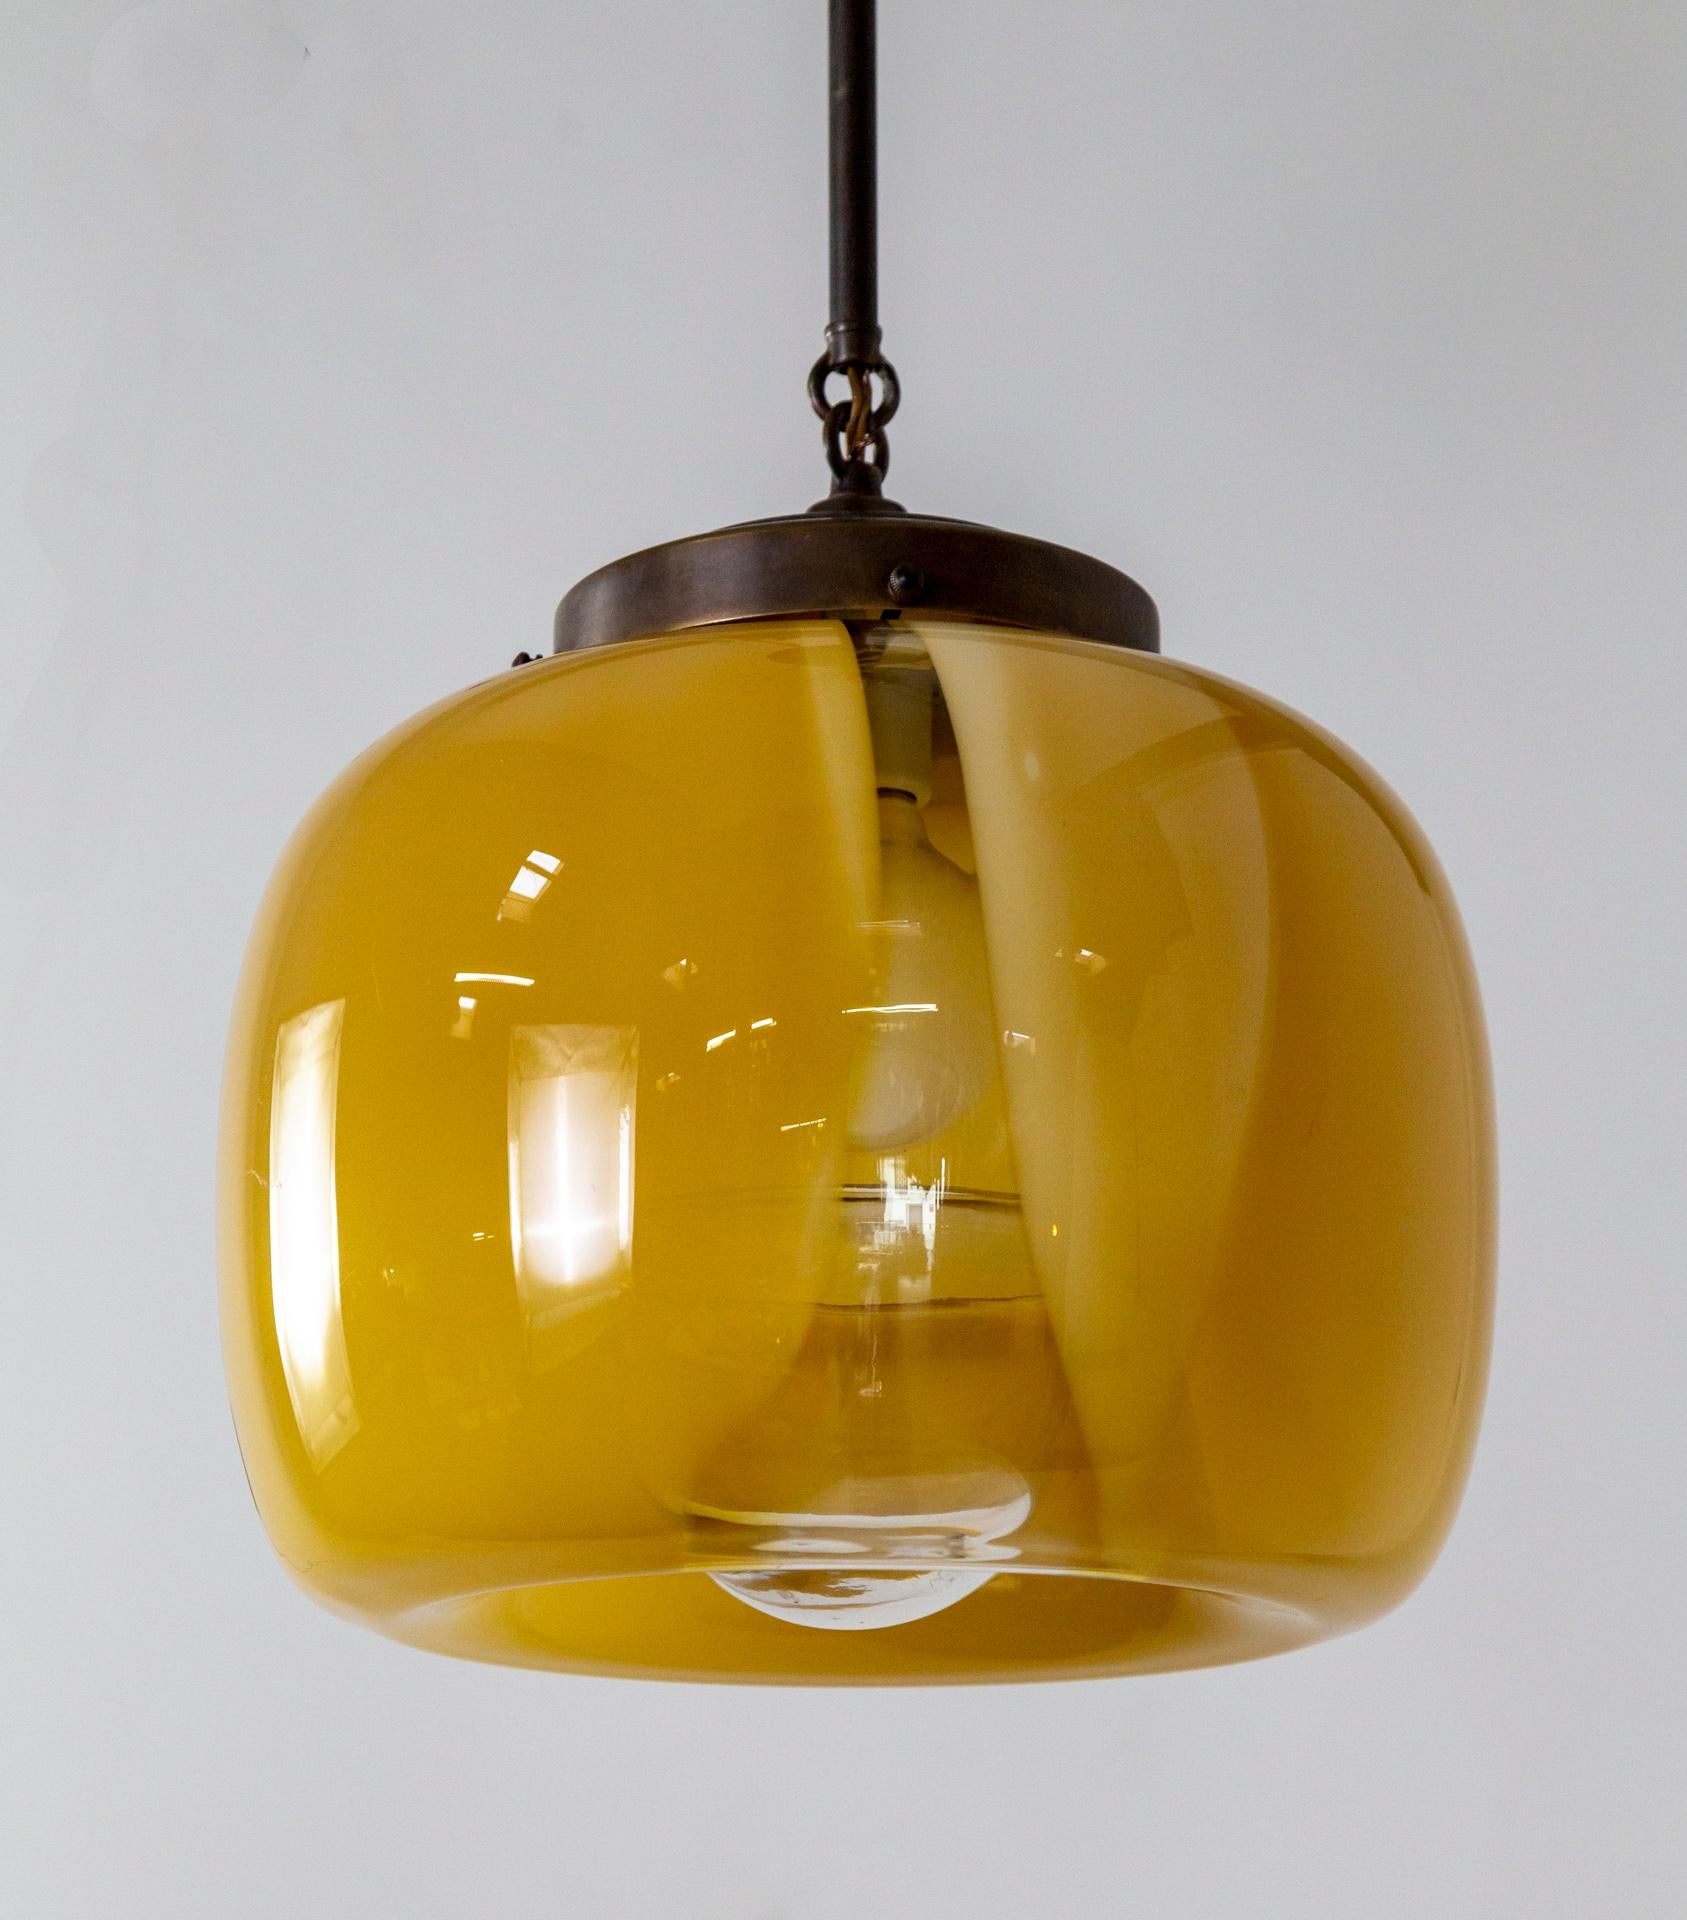 Une lampe suspendue avec un abat-jour complexe en verre de Murano, soufflé à la main, de couleur jaune ambré laiteux avec une strie claire qui révèle l'intérieur.  Le baldaquin, la tige et le support de l'abat-jour sont en laiton de couleur bronze. 